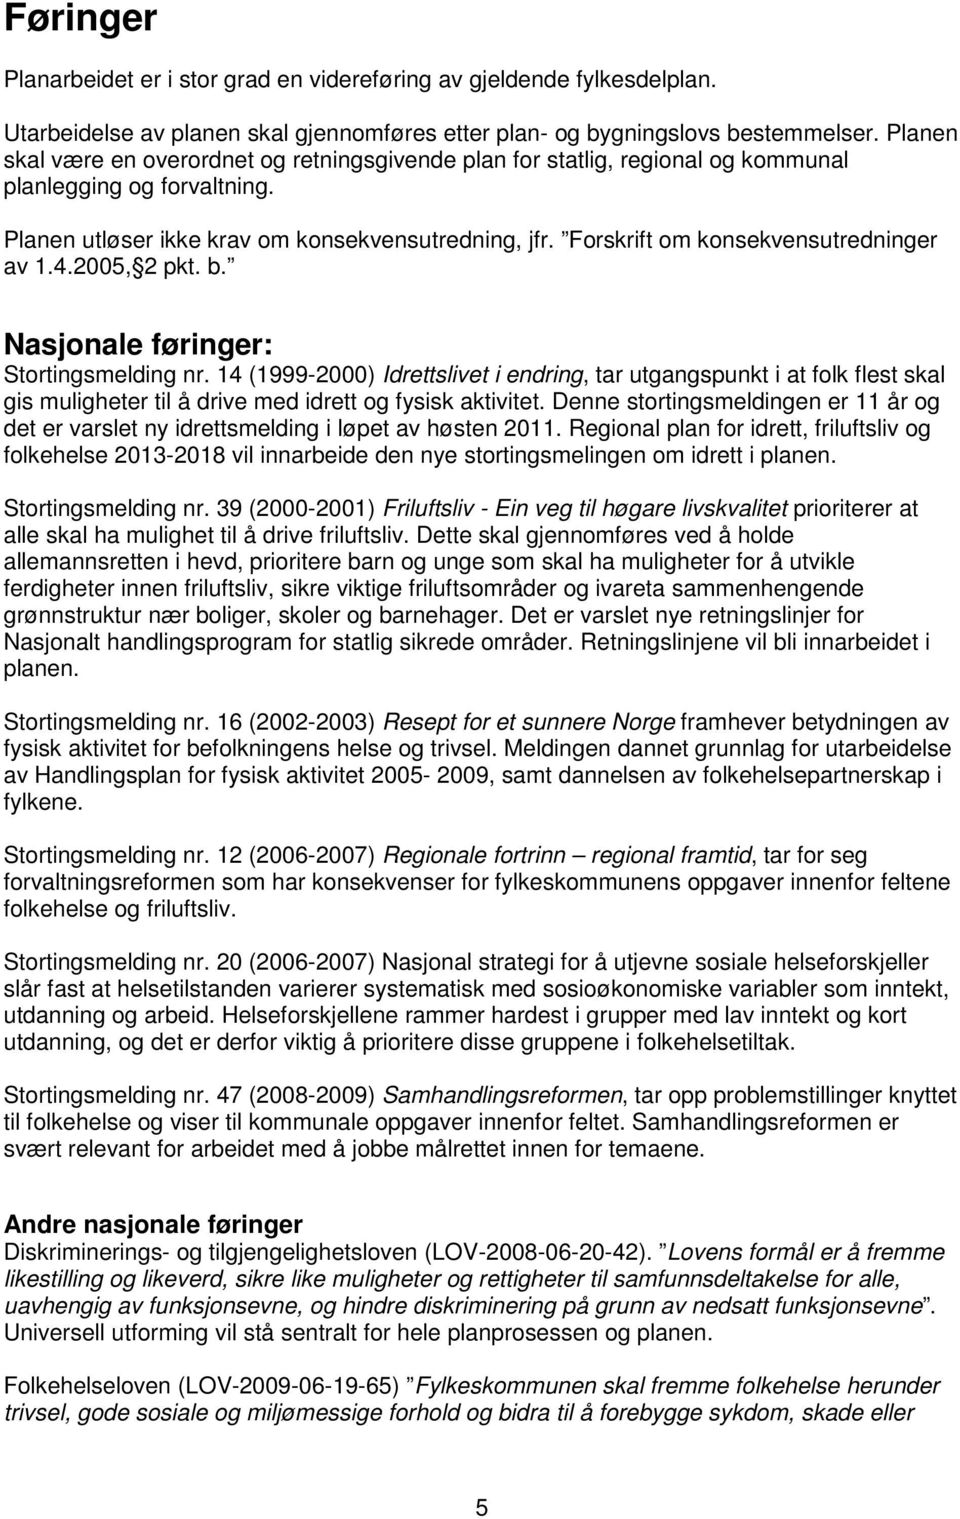 Forskrift om konsekvensutredninger av 1.4.2005, 2 pkt. b. Nasjonale føringer: Stortingsmelding nr.